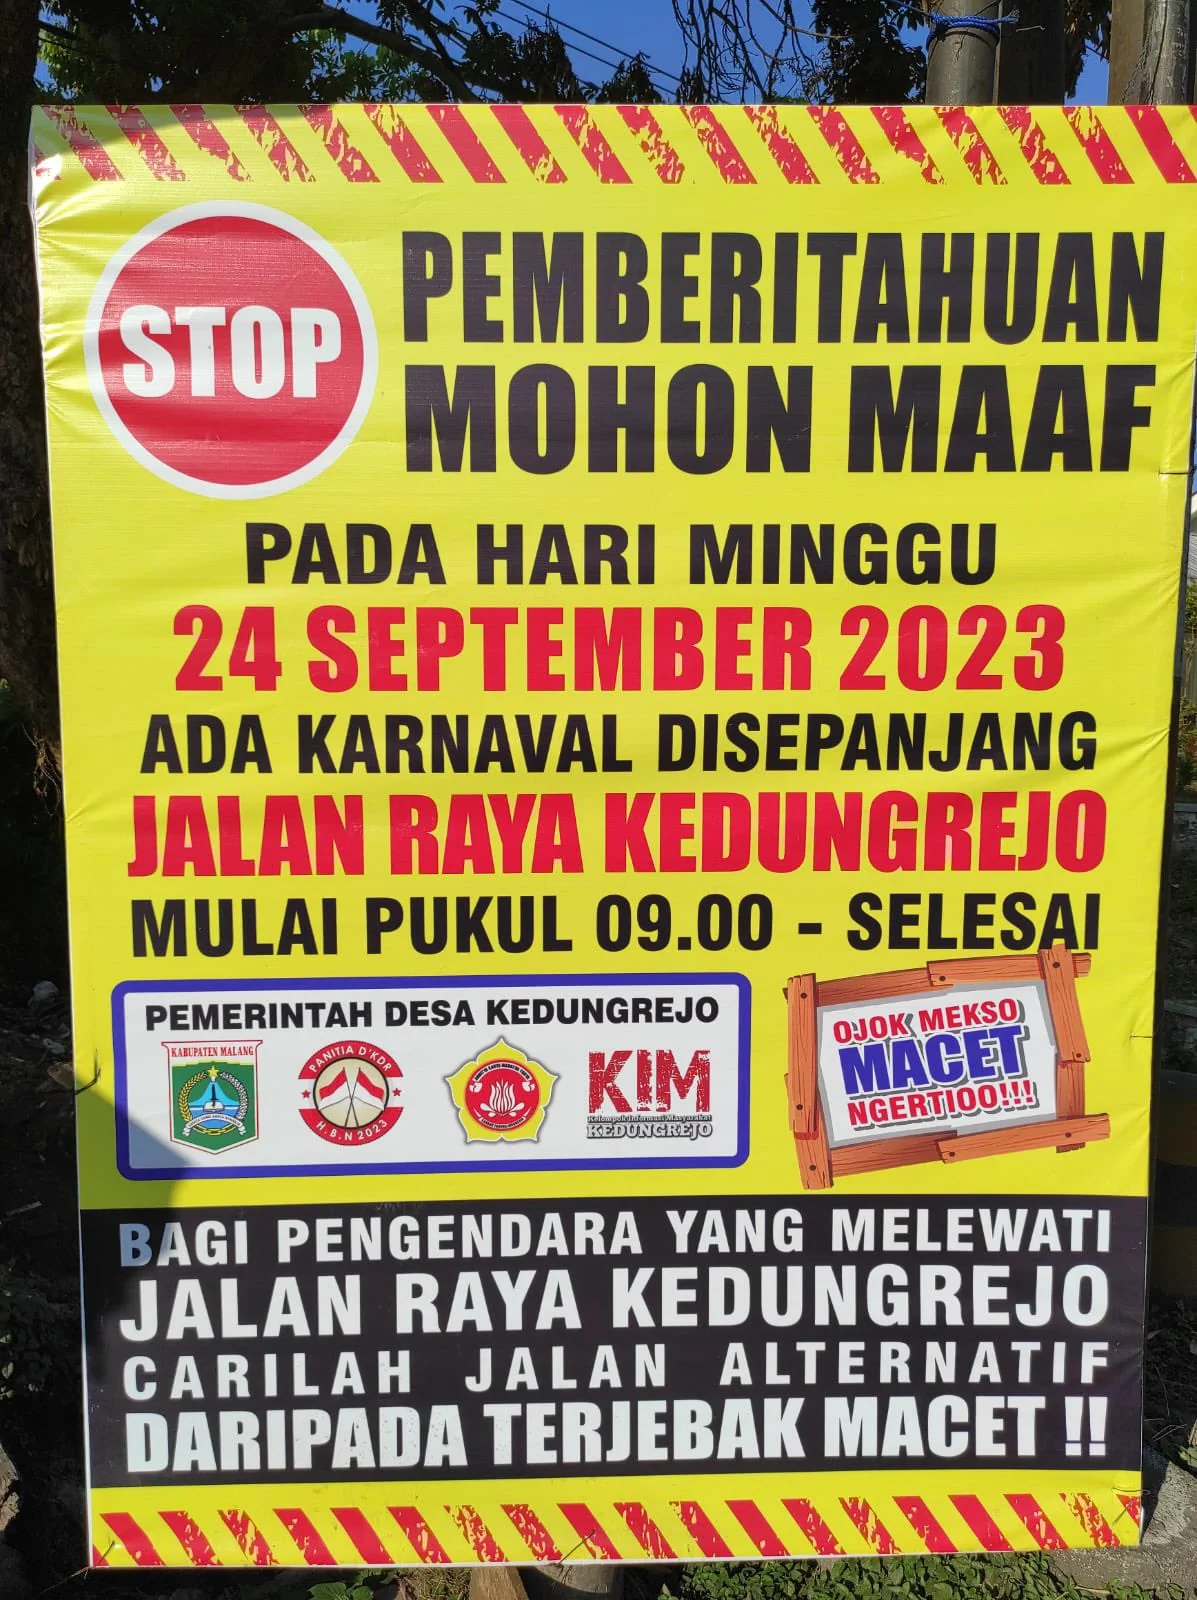 Penutupan Jalan di Malang 24 September 2023 Adanya Karnaval Desa Kedungrejo, Berikut Rute Alternatifnya!